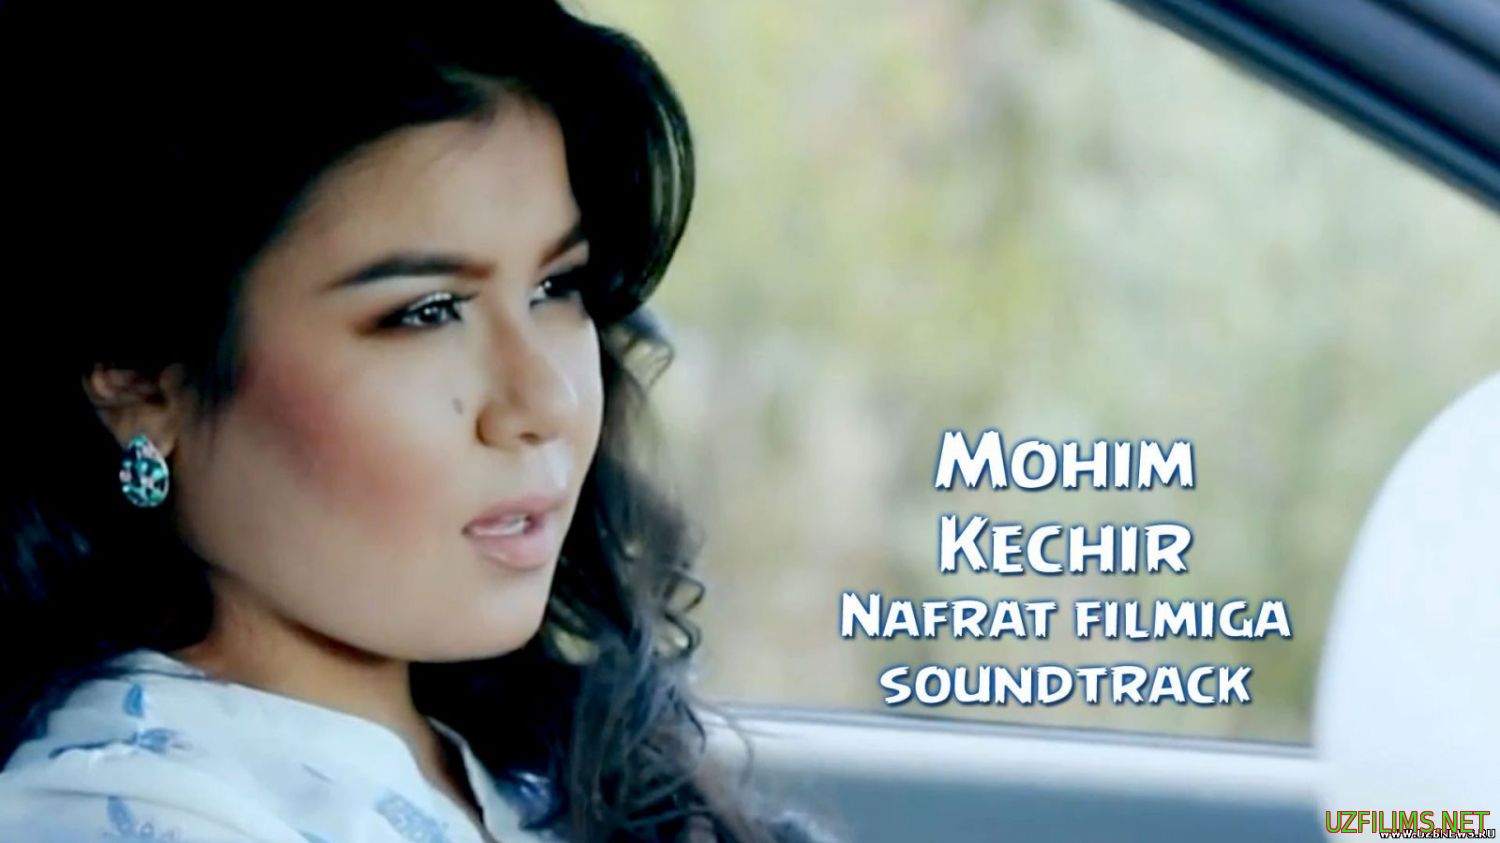 Mohim - Kechir (2014)